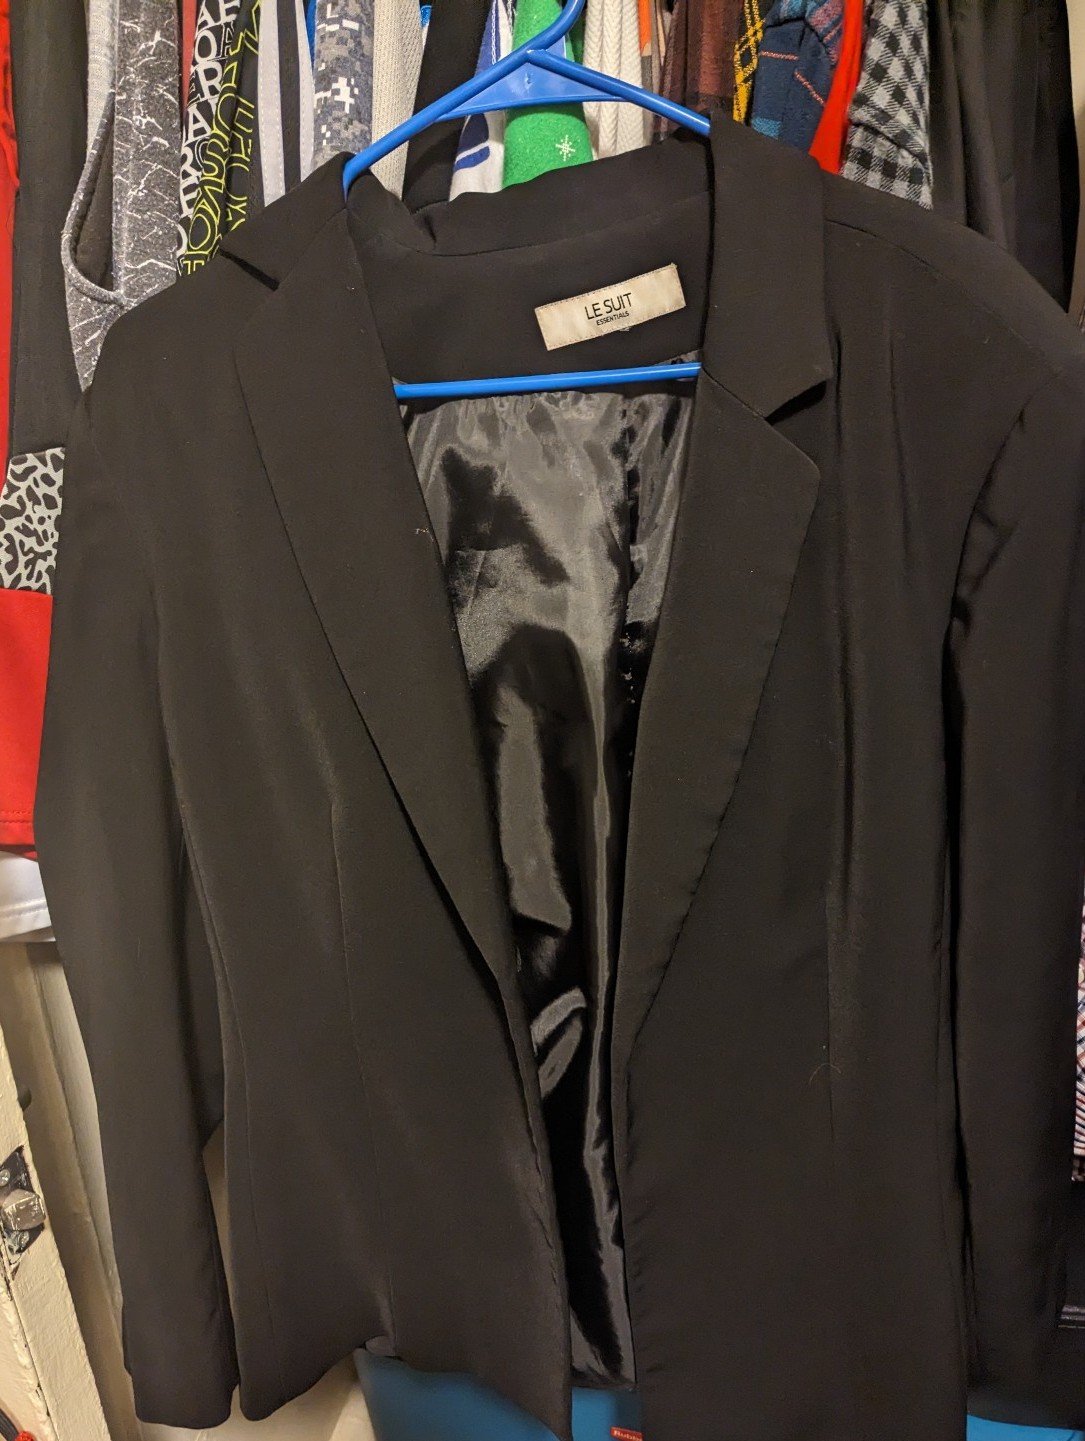 Le Suit Black mens Suit Jacket hlNBTd3md